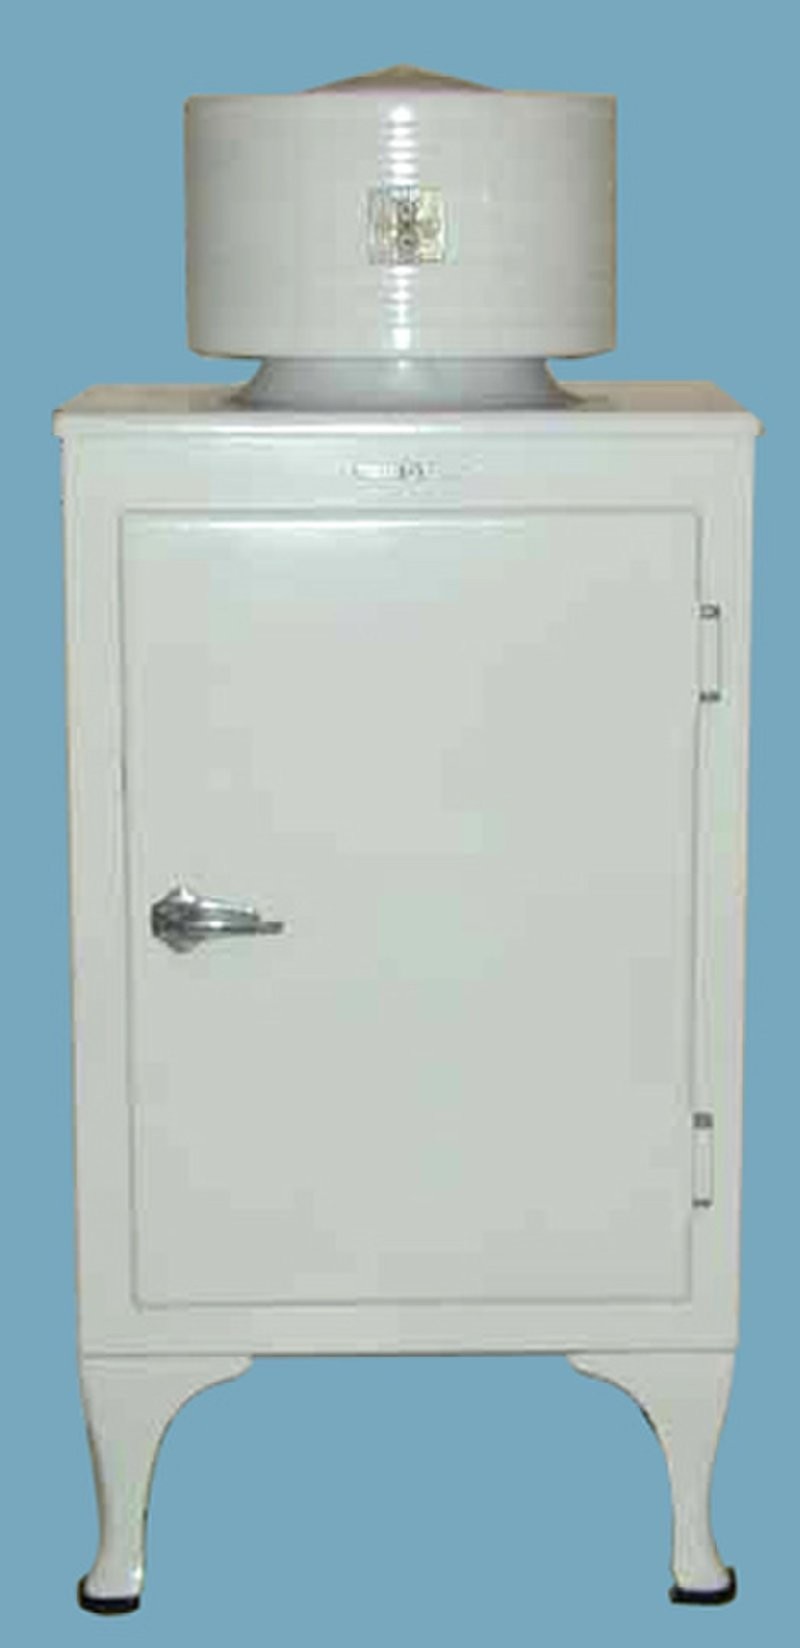 16. Первым холодильником, получившим широкое распространение, была модель Monitor-Top фирмы General Electric 1927 года